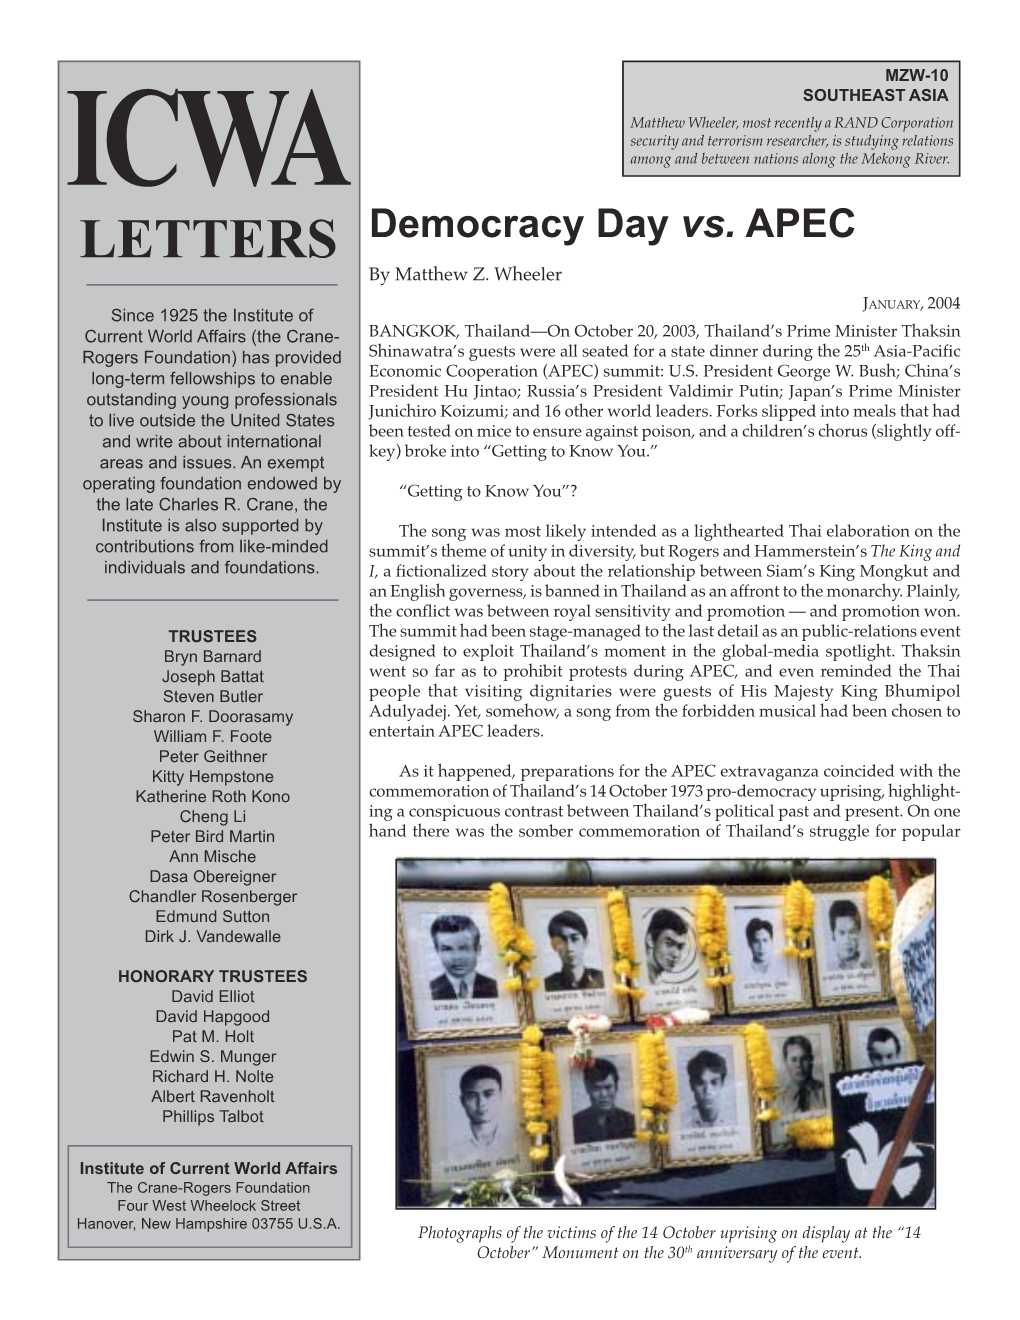 Democracy Day Vs. APEC by Matthew Z